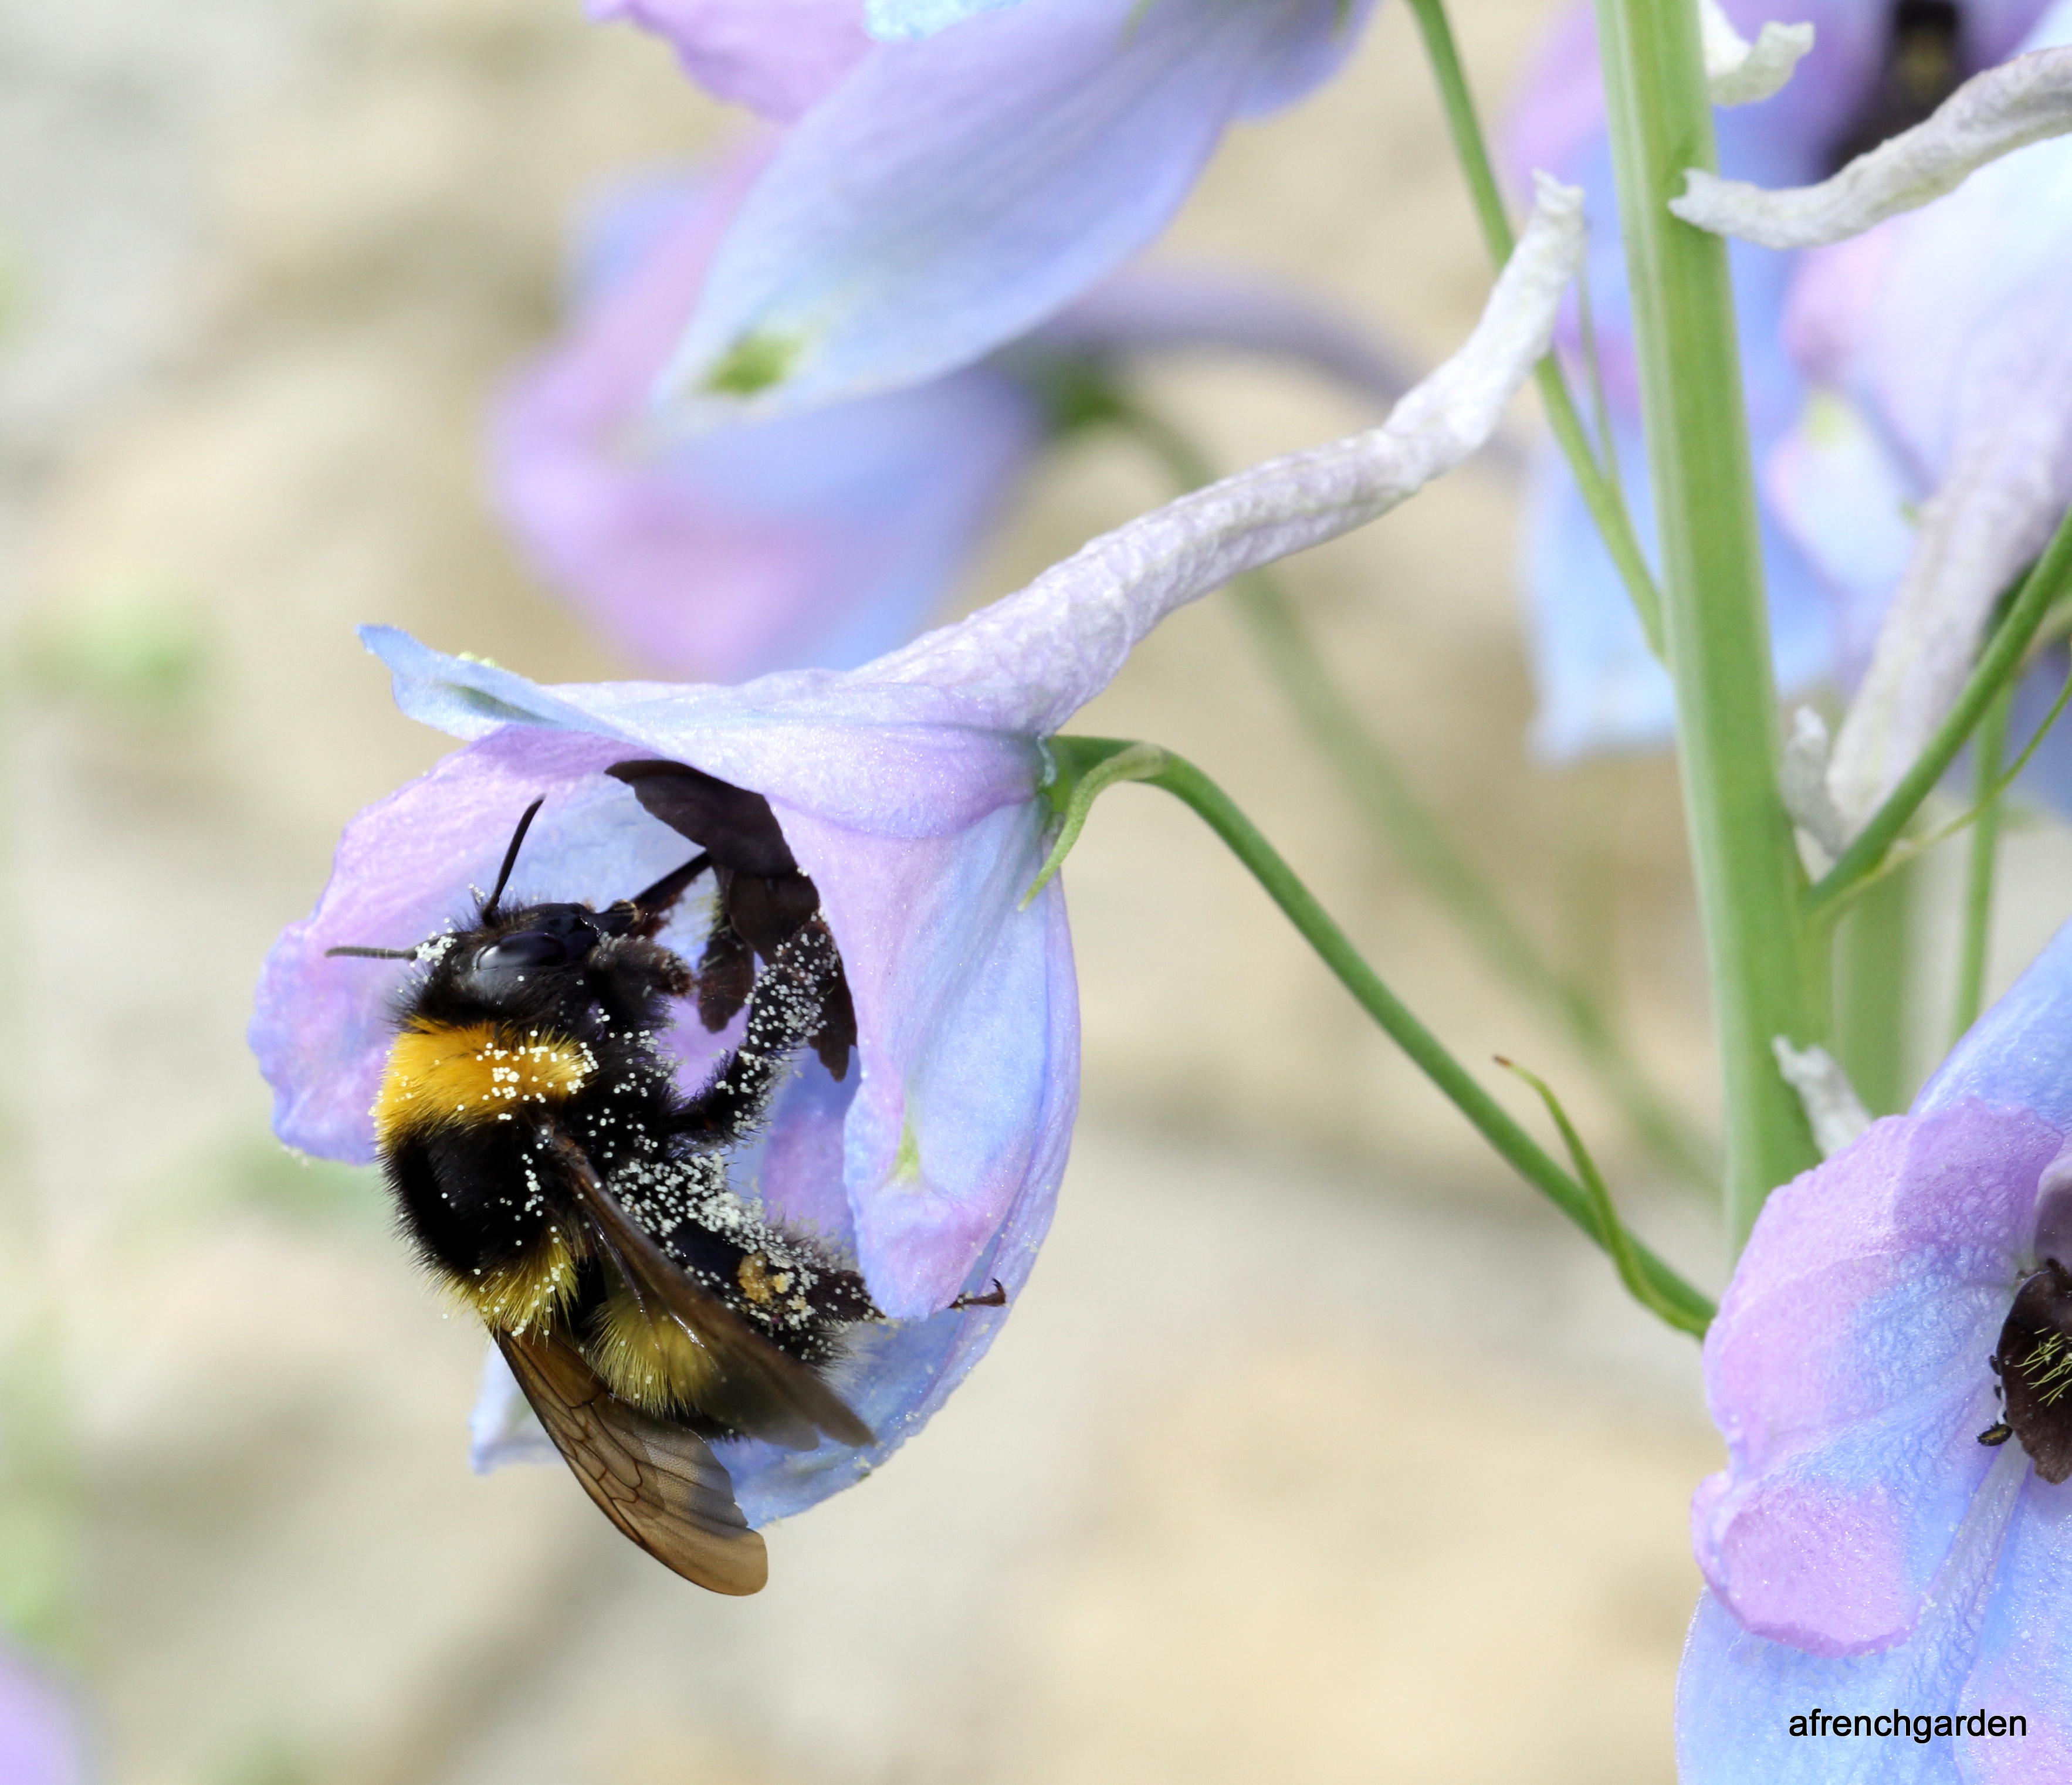 1-Garden bumble bee in Delphineum